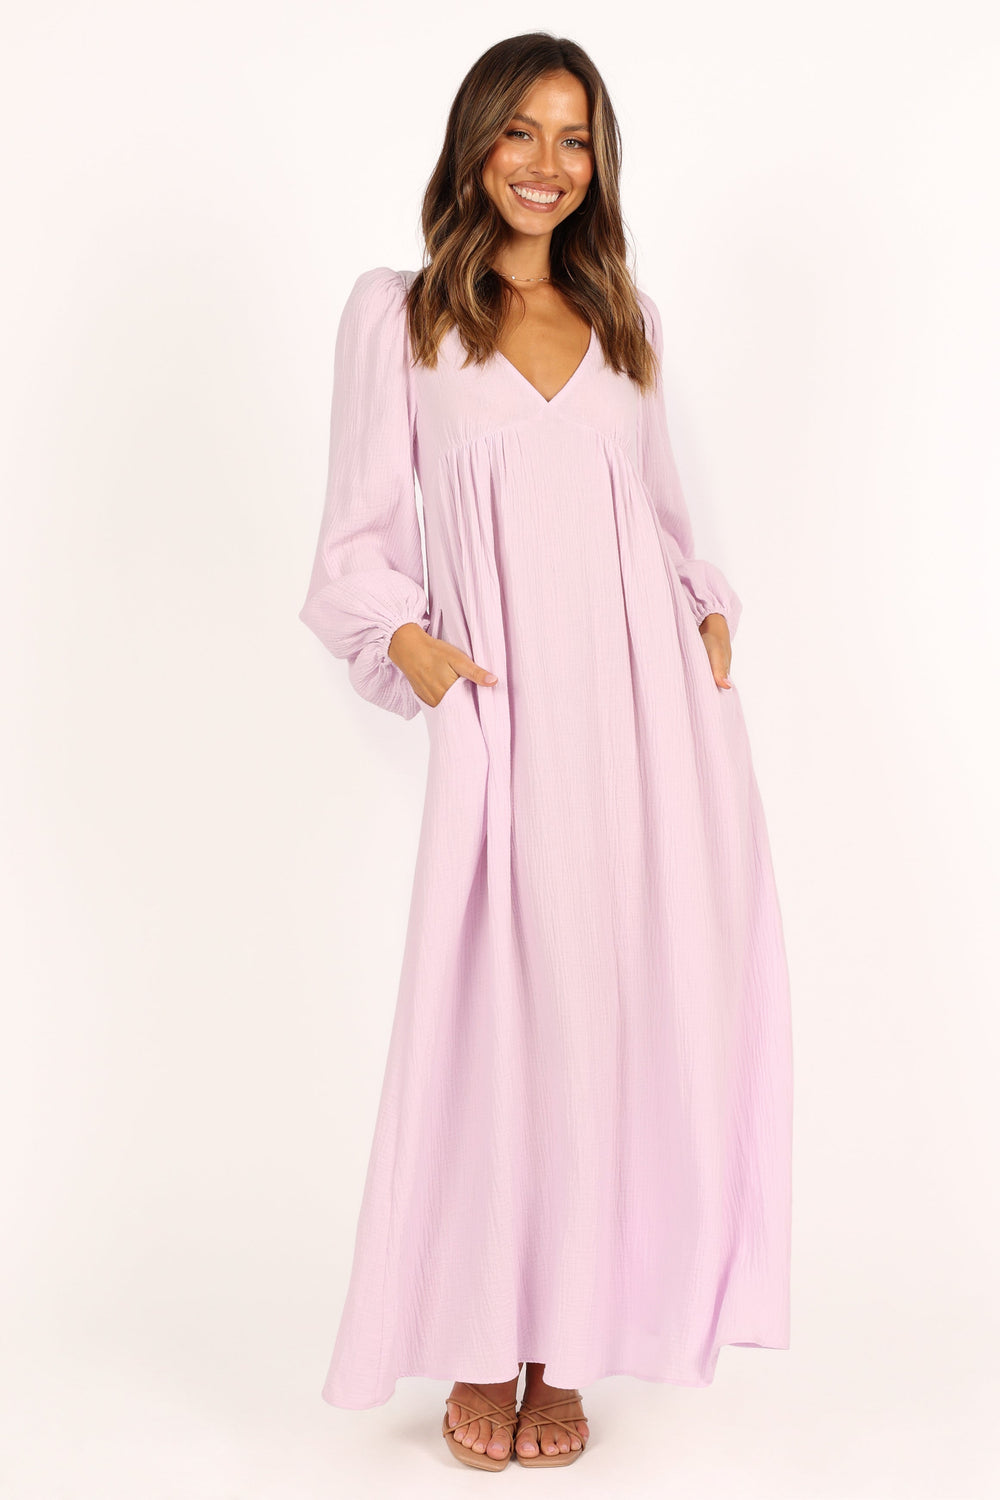 Willow Long Sleeve Maxi Dress - Lilac - Petal & Pup